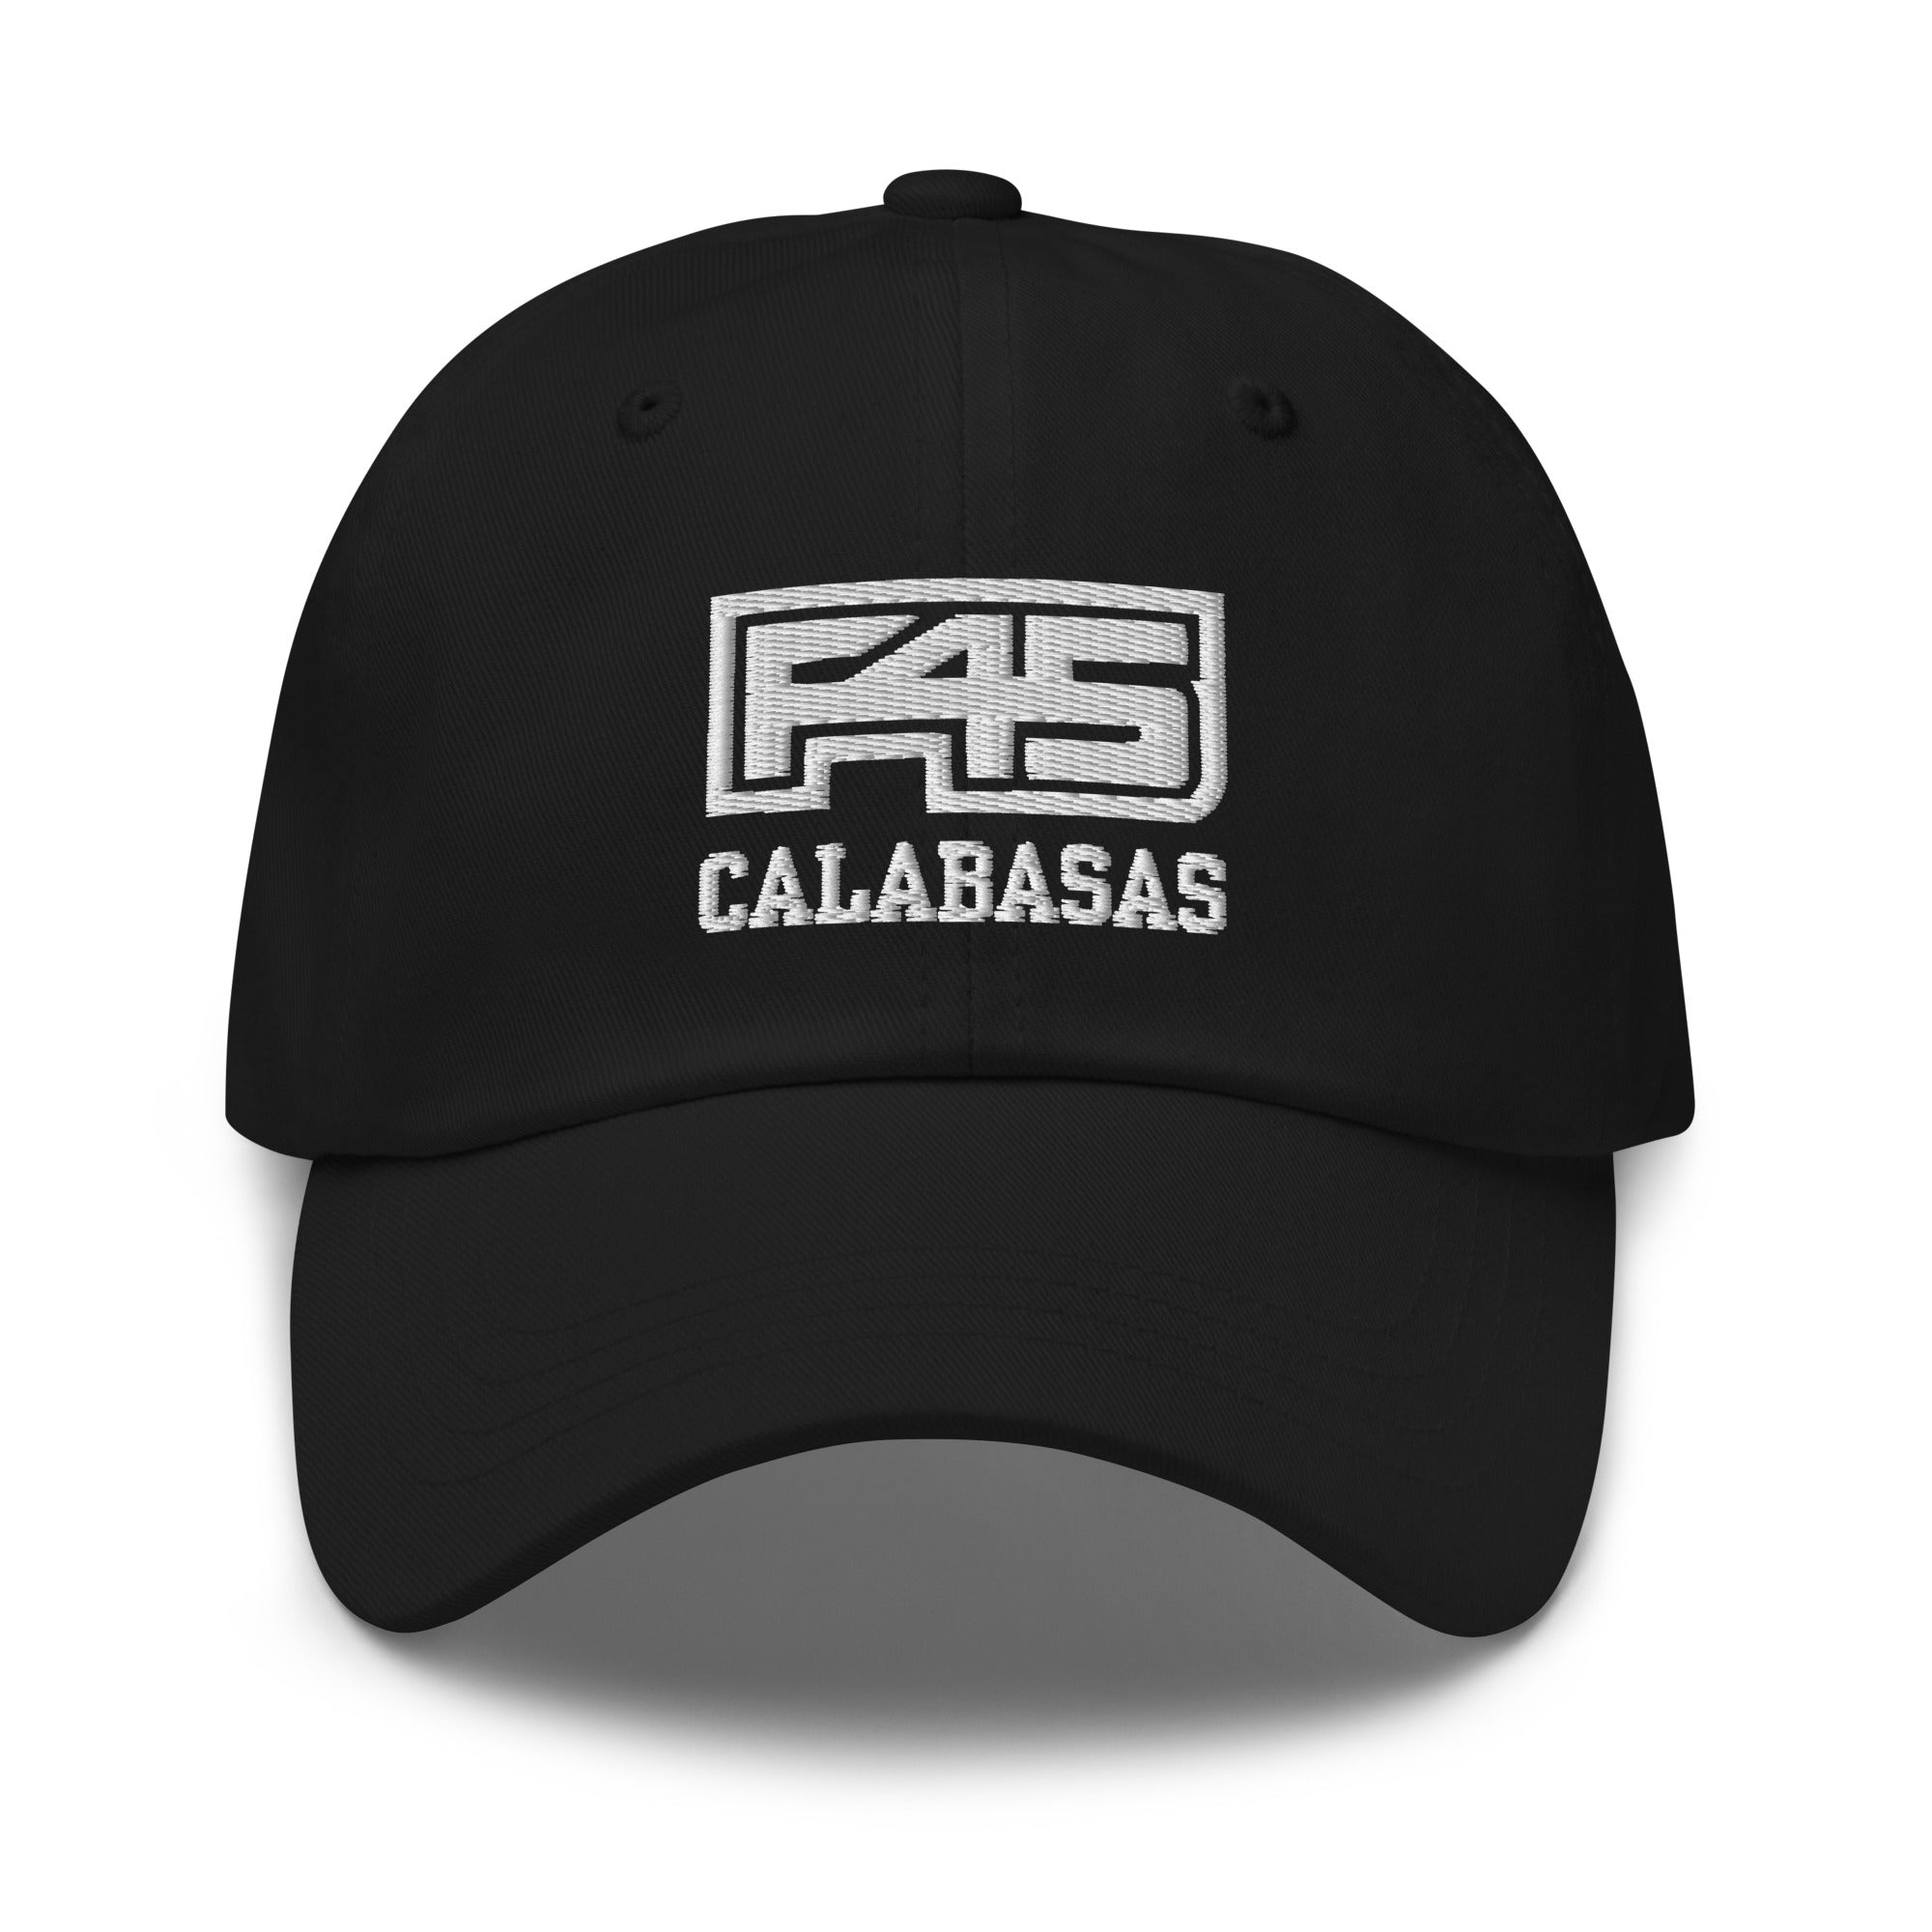 F45 Calabasas Dad Hat